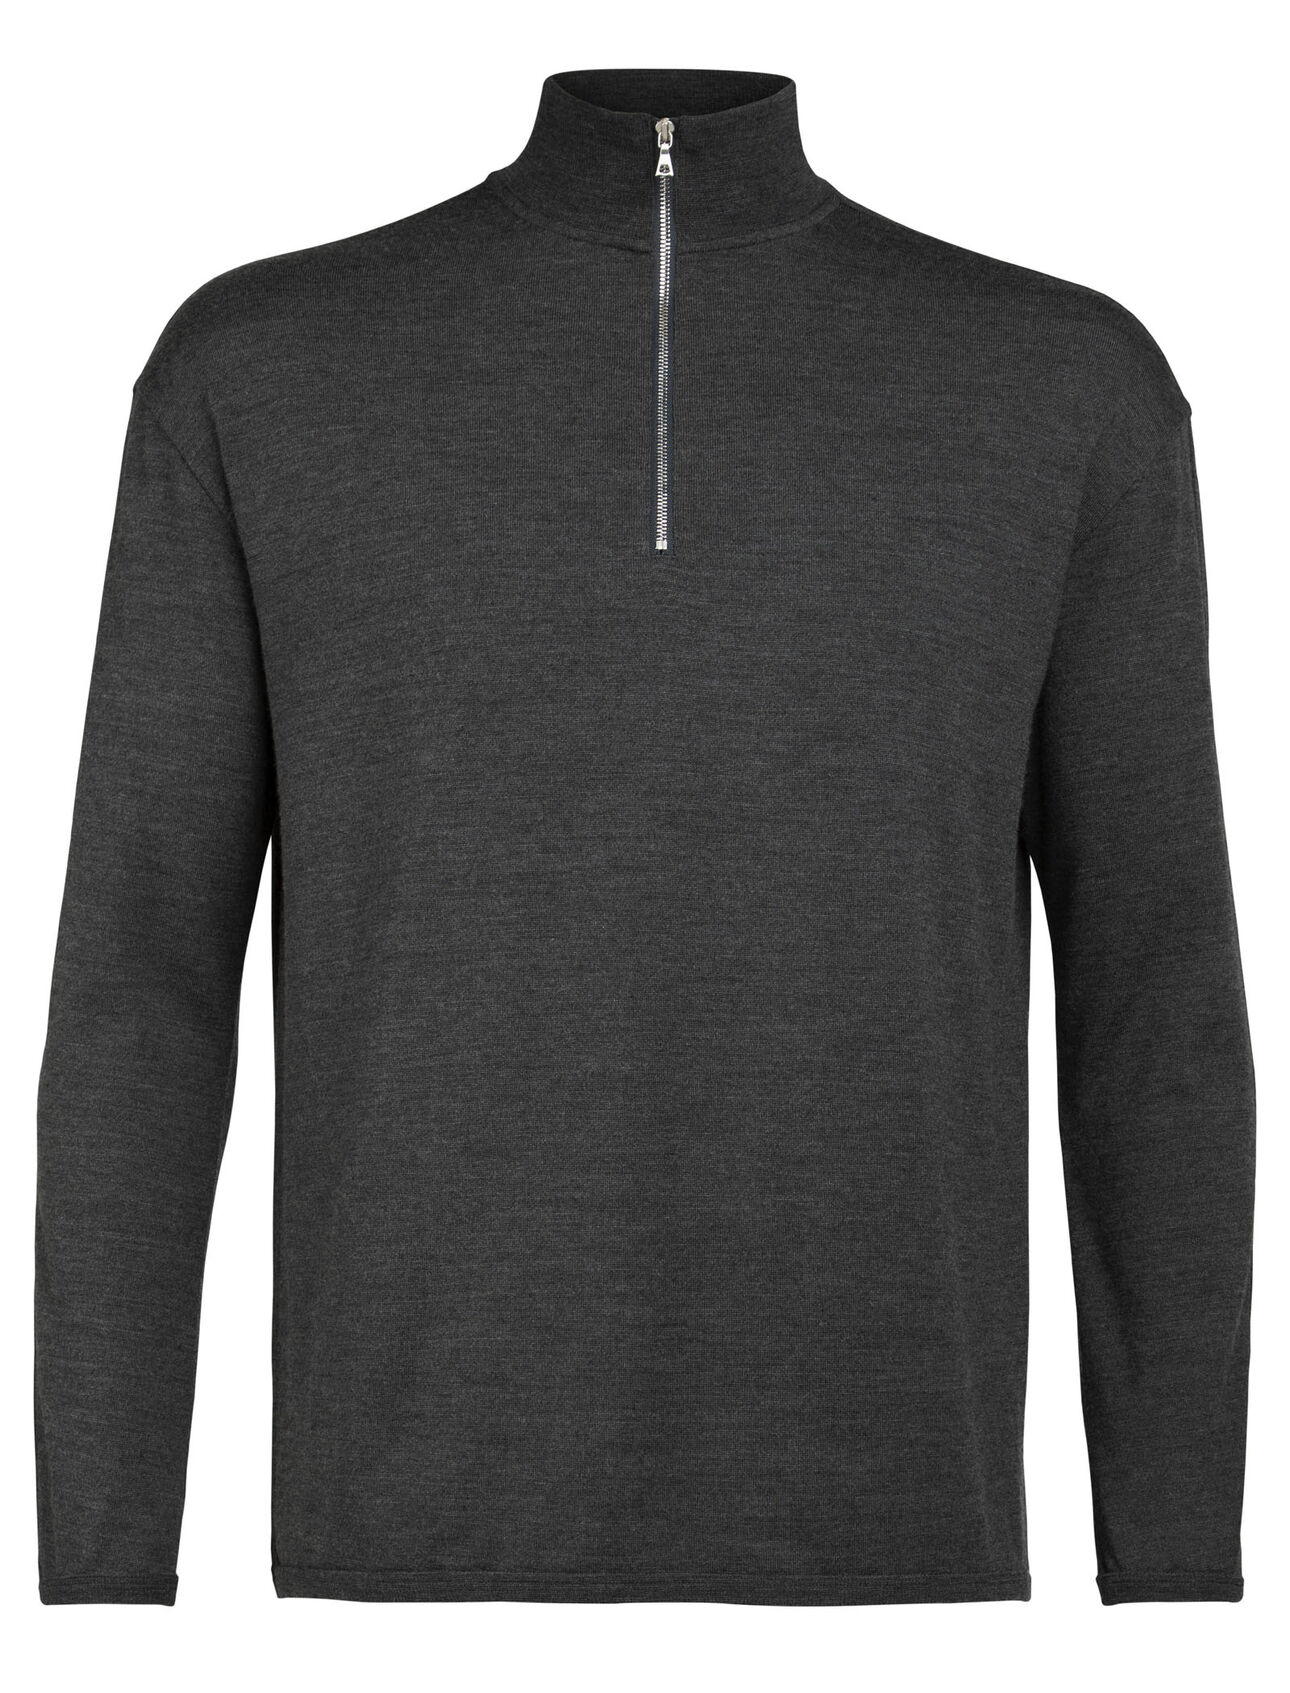 Demi-zip manches longues Deice Homme Sweatshirt classique, composé d’un jersey 100 % mérinos à grammage moyen, le haut demi-zip manches longues Deice allie parfaitement style et confort. 